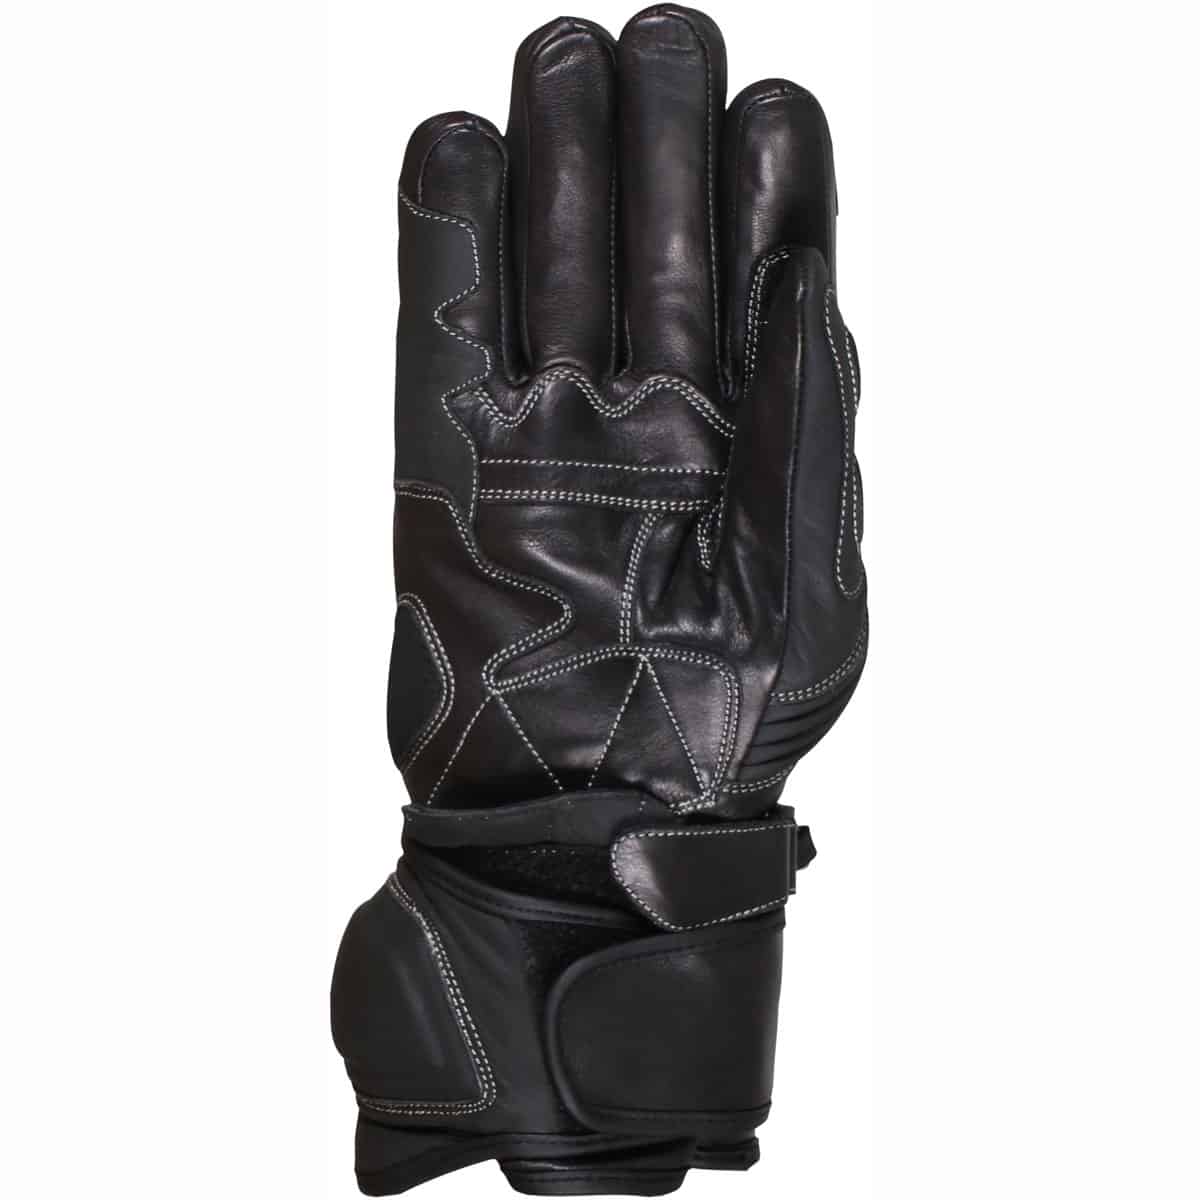 Duchinni Spartan Gloves sports waterproof gloves palm